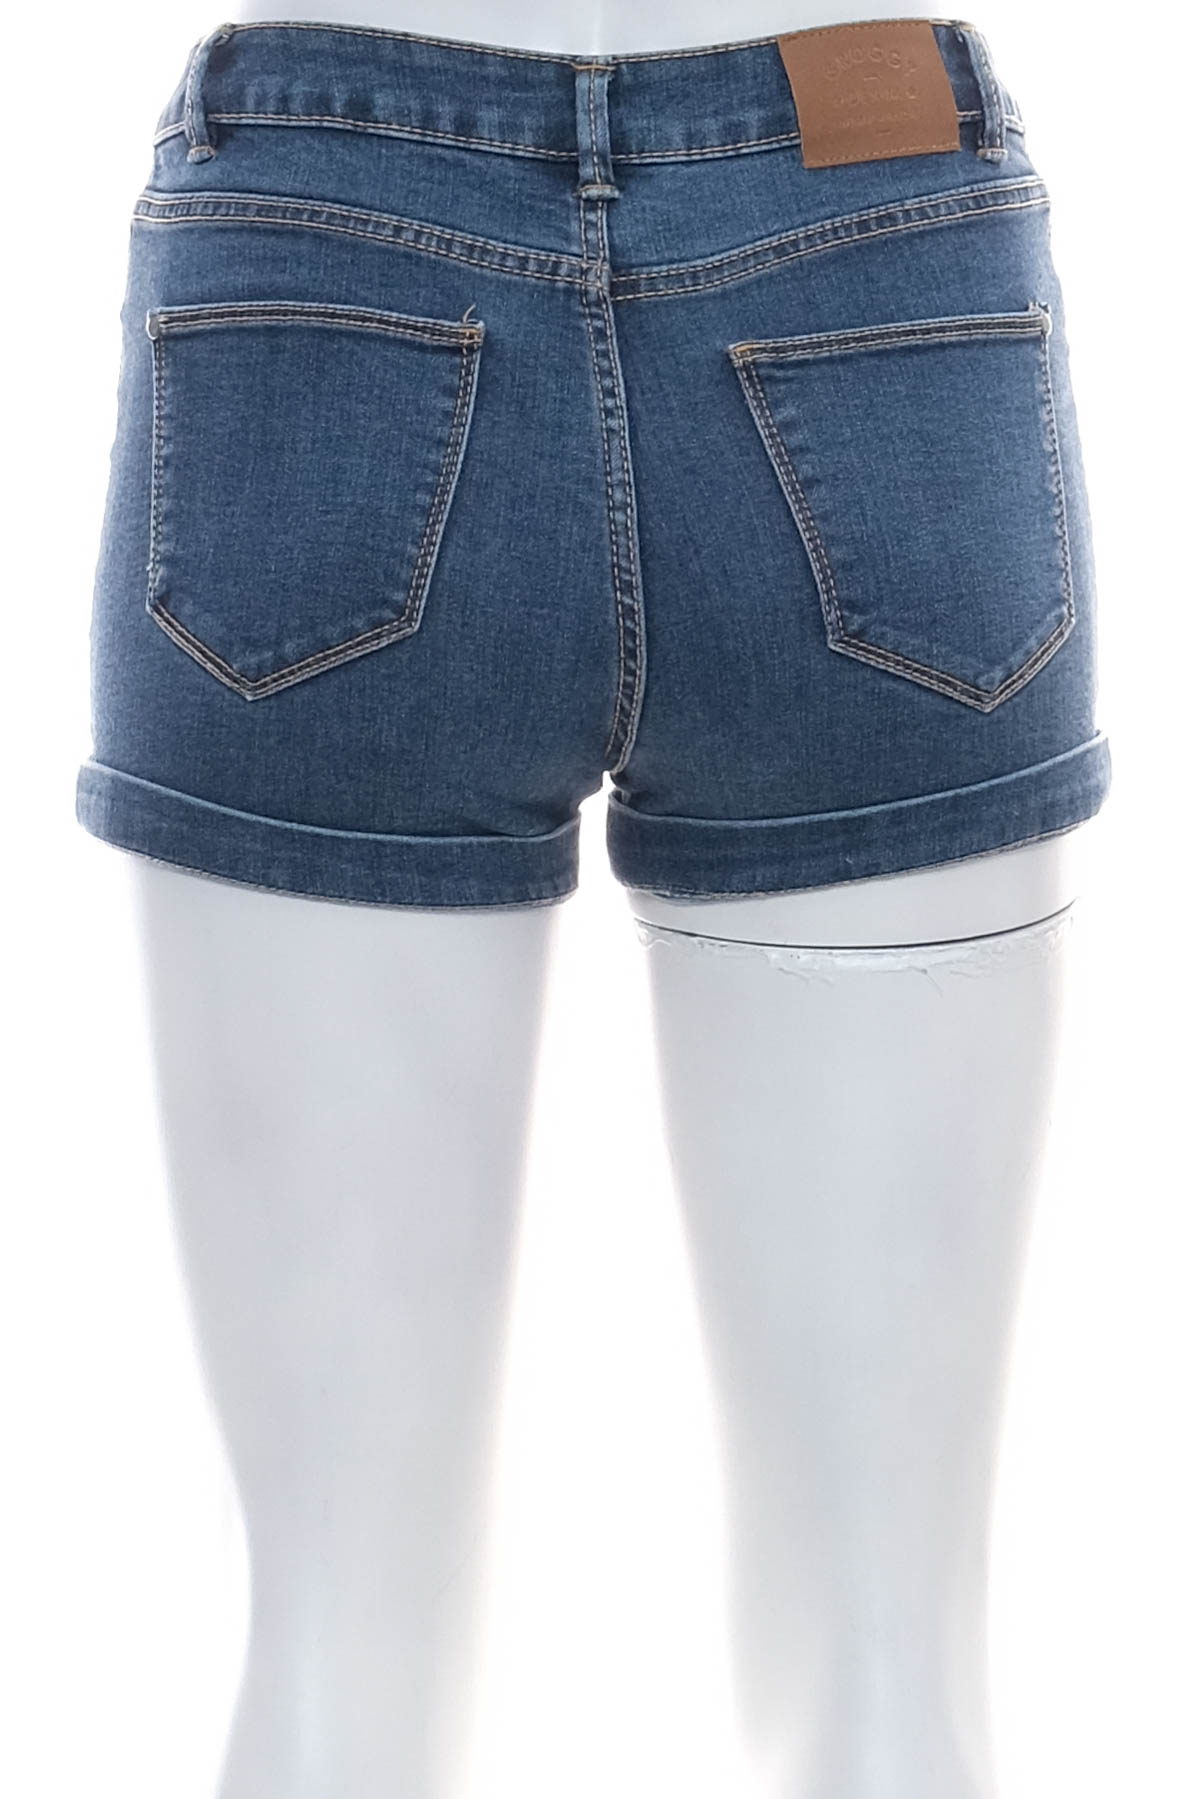 Female shorts - Groggy by jbc - 1